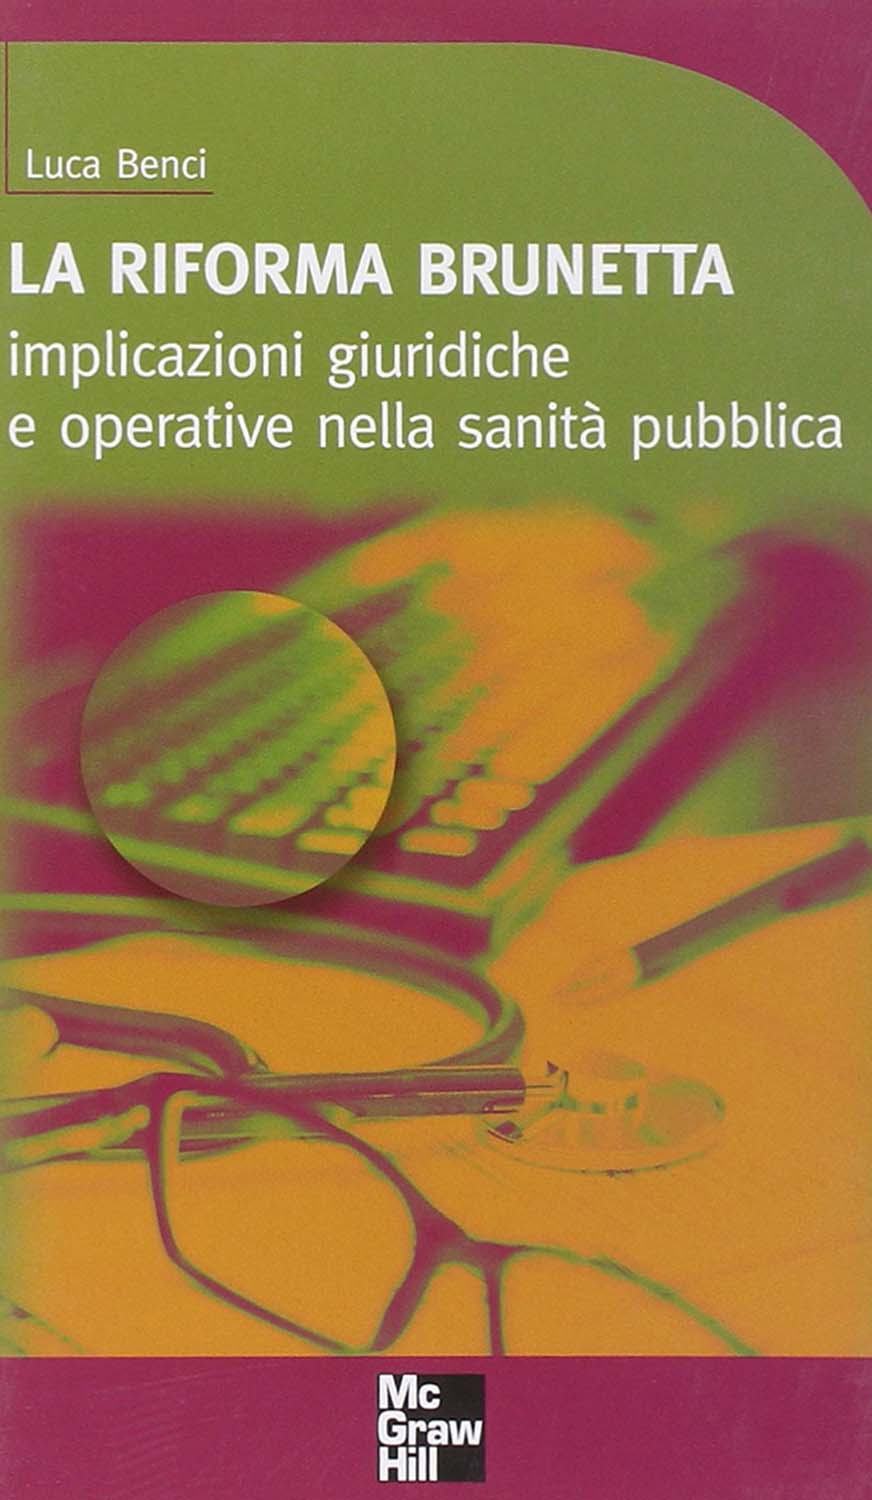 Libri Luca Benci - La Riforma Brunetta NUOVO SIGILLATO, EDIZIONE DEL 01/01/2010 SUBITO DISPONIBILE